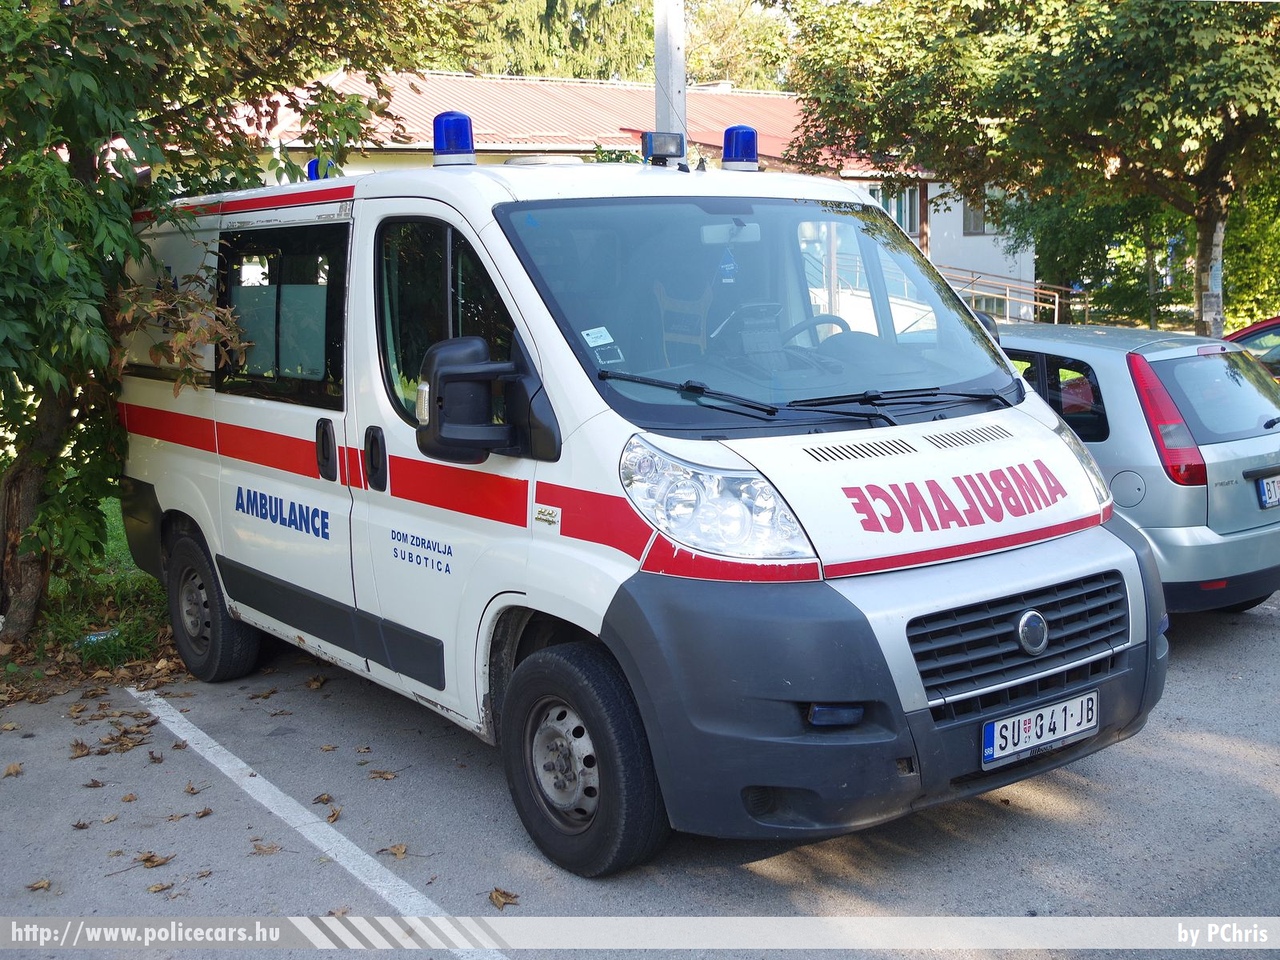 Fiat Ducato, fotó: PChris
Keywords: szerb Szerbia mentő mentőautó Serbia serbian ambulance